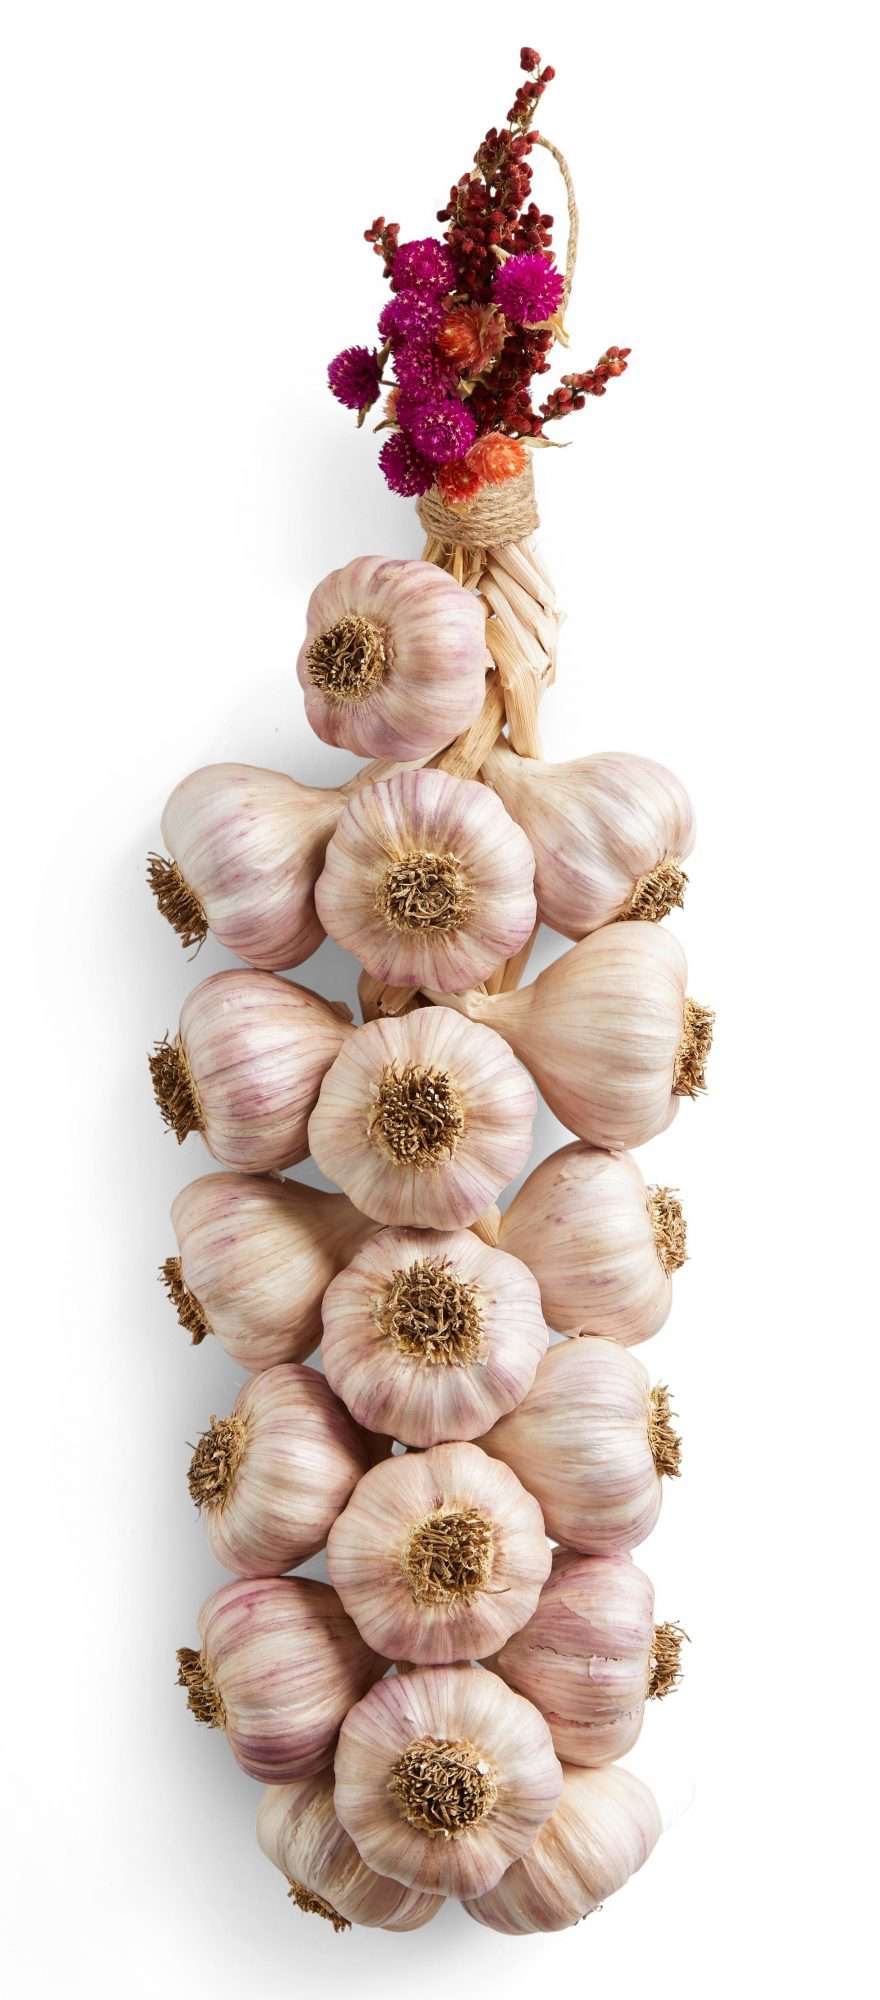 Grade A Gardens garlic